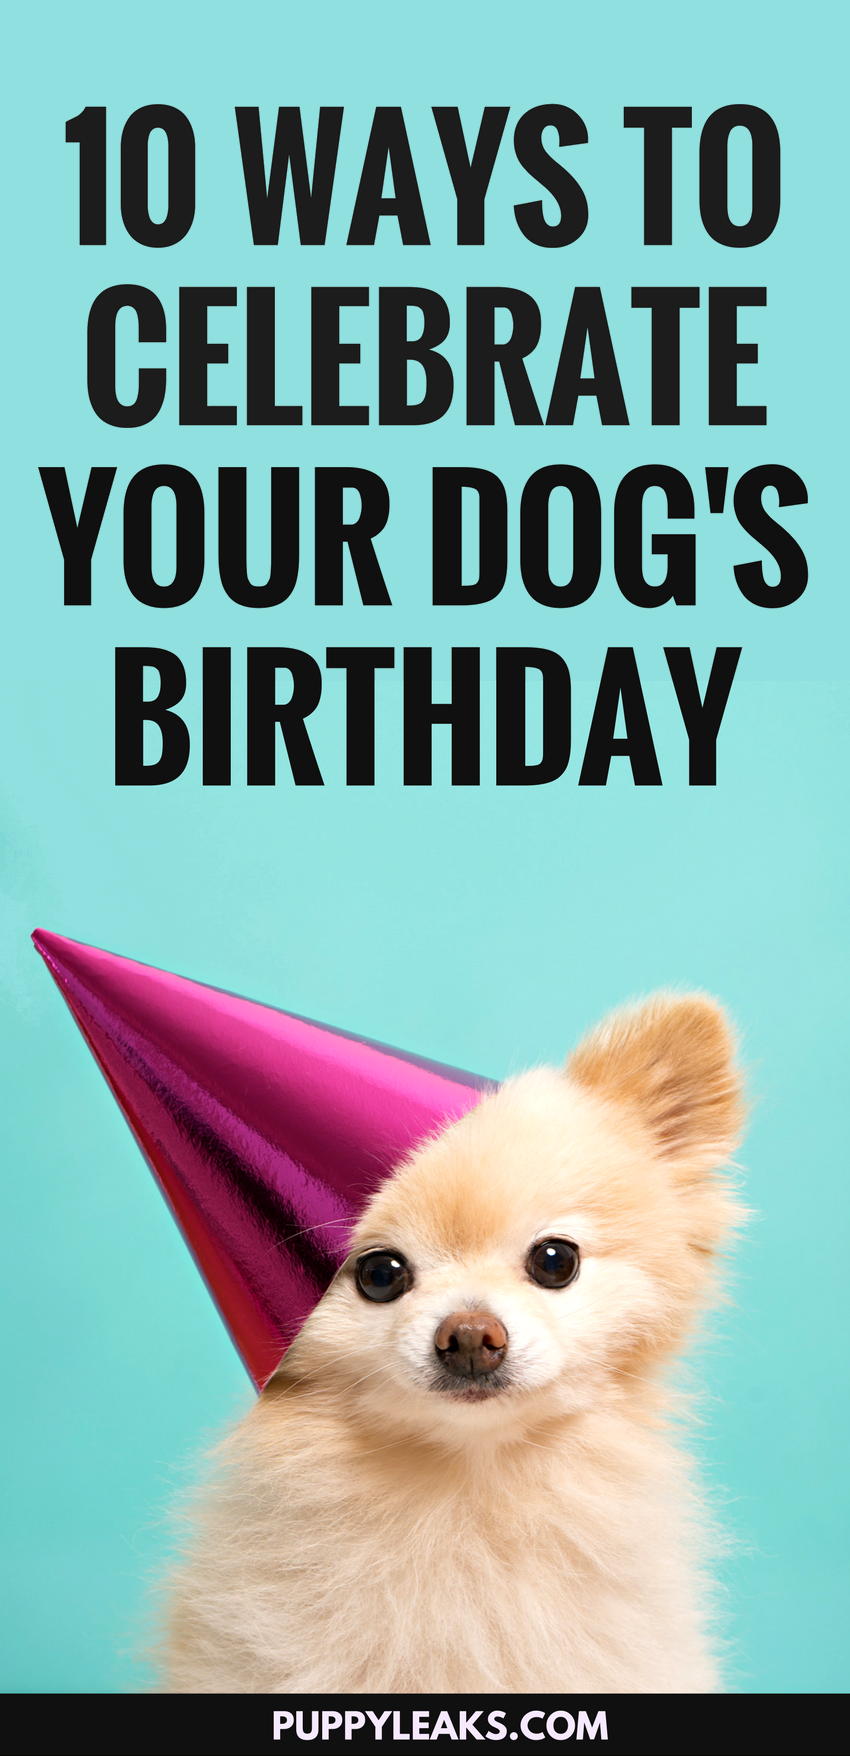 10 zábavných způsobů, jak oslavit narozeniny svého psa